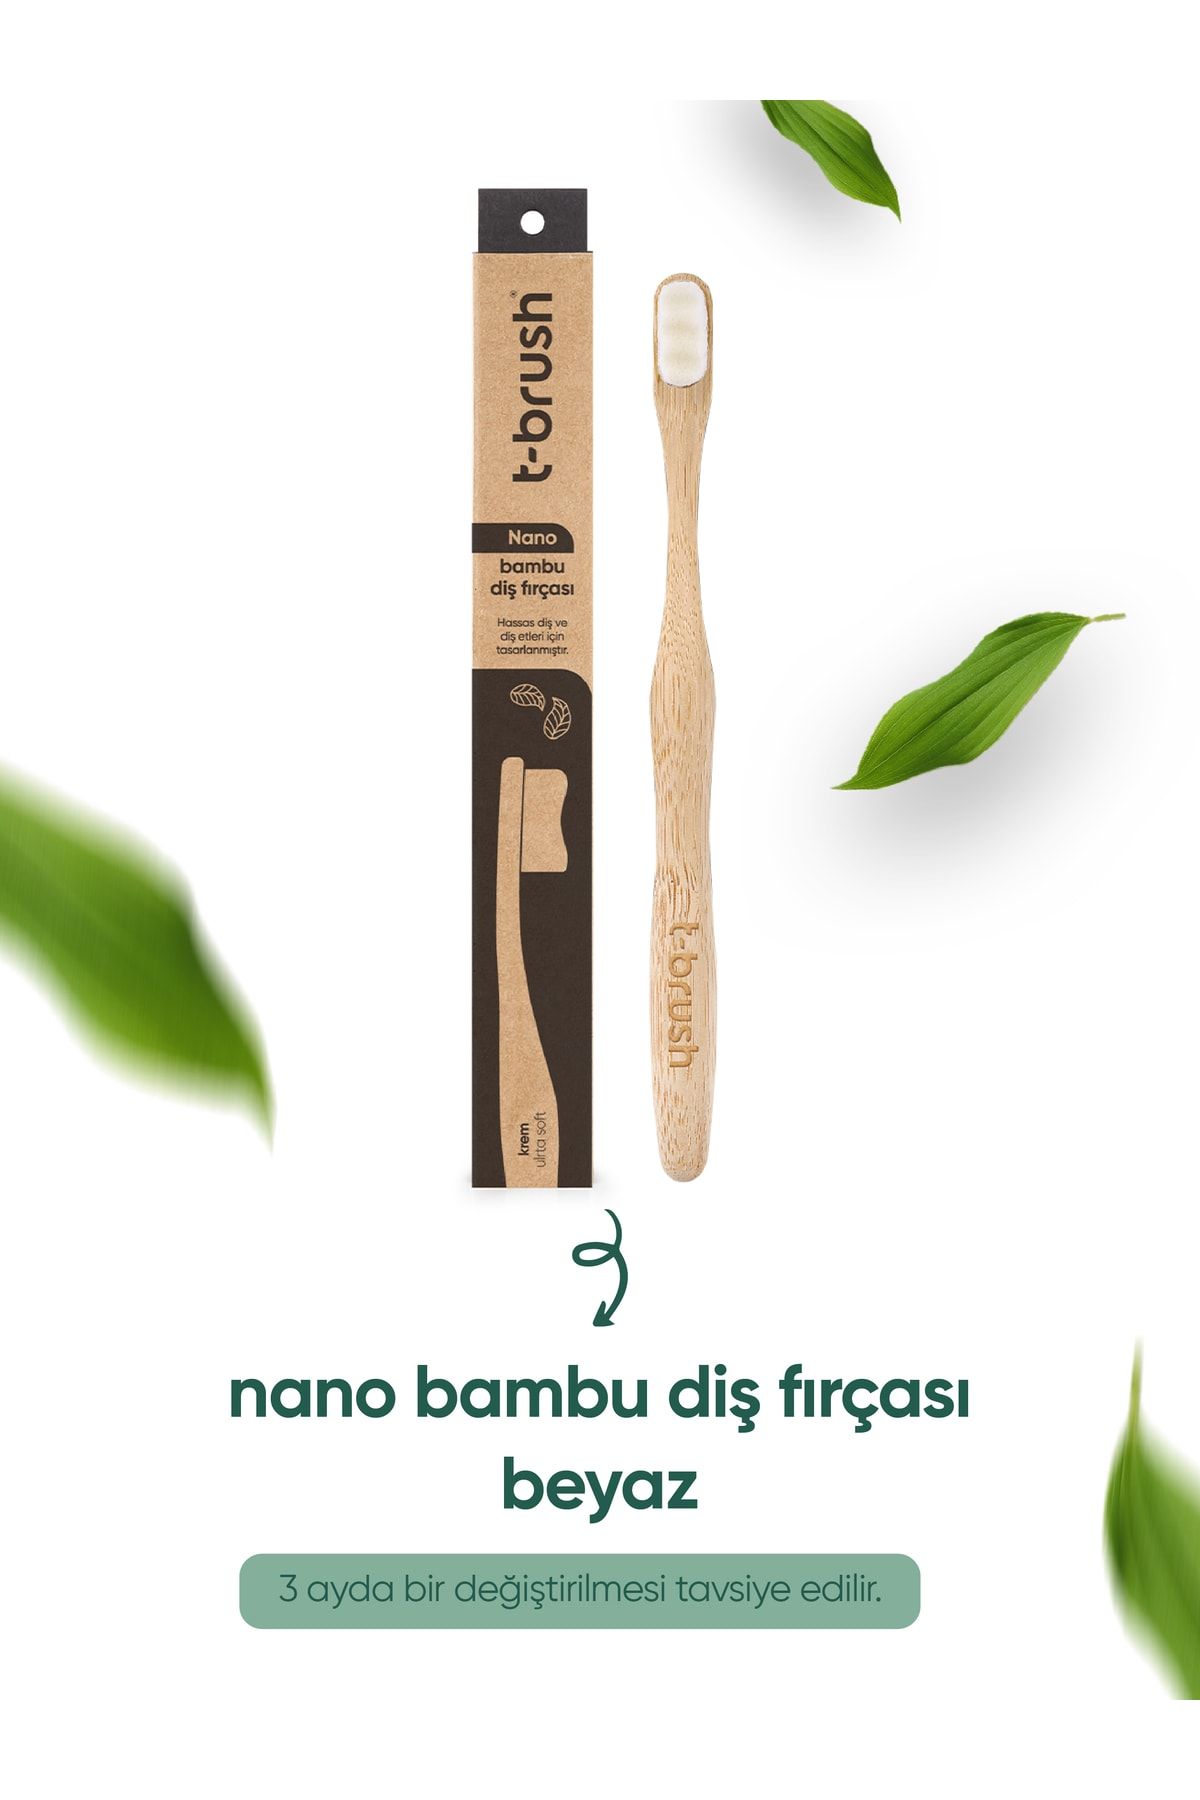 TBRUSH Nano Vegan Bambu Diş Fırçası - Ultra Soft (Hassas Dişler için) - Beyaz Renk - Plastiksiz